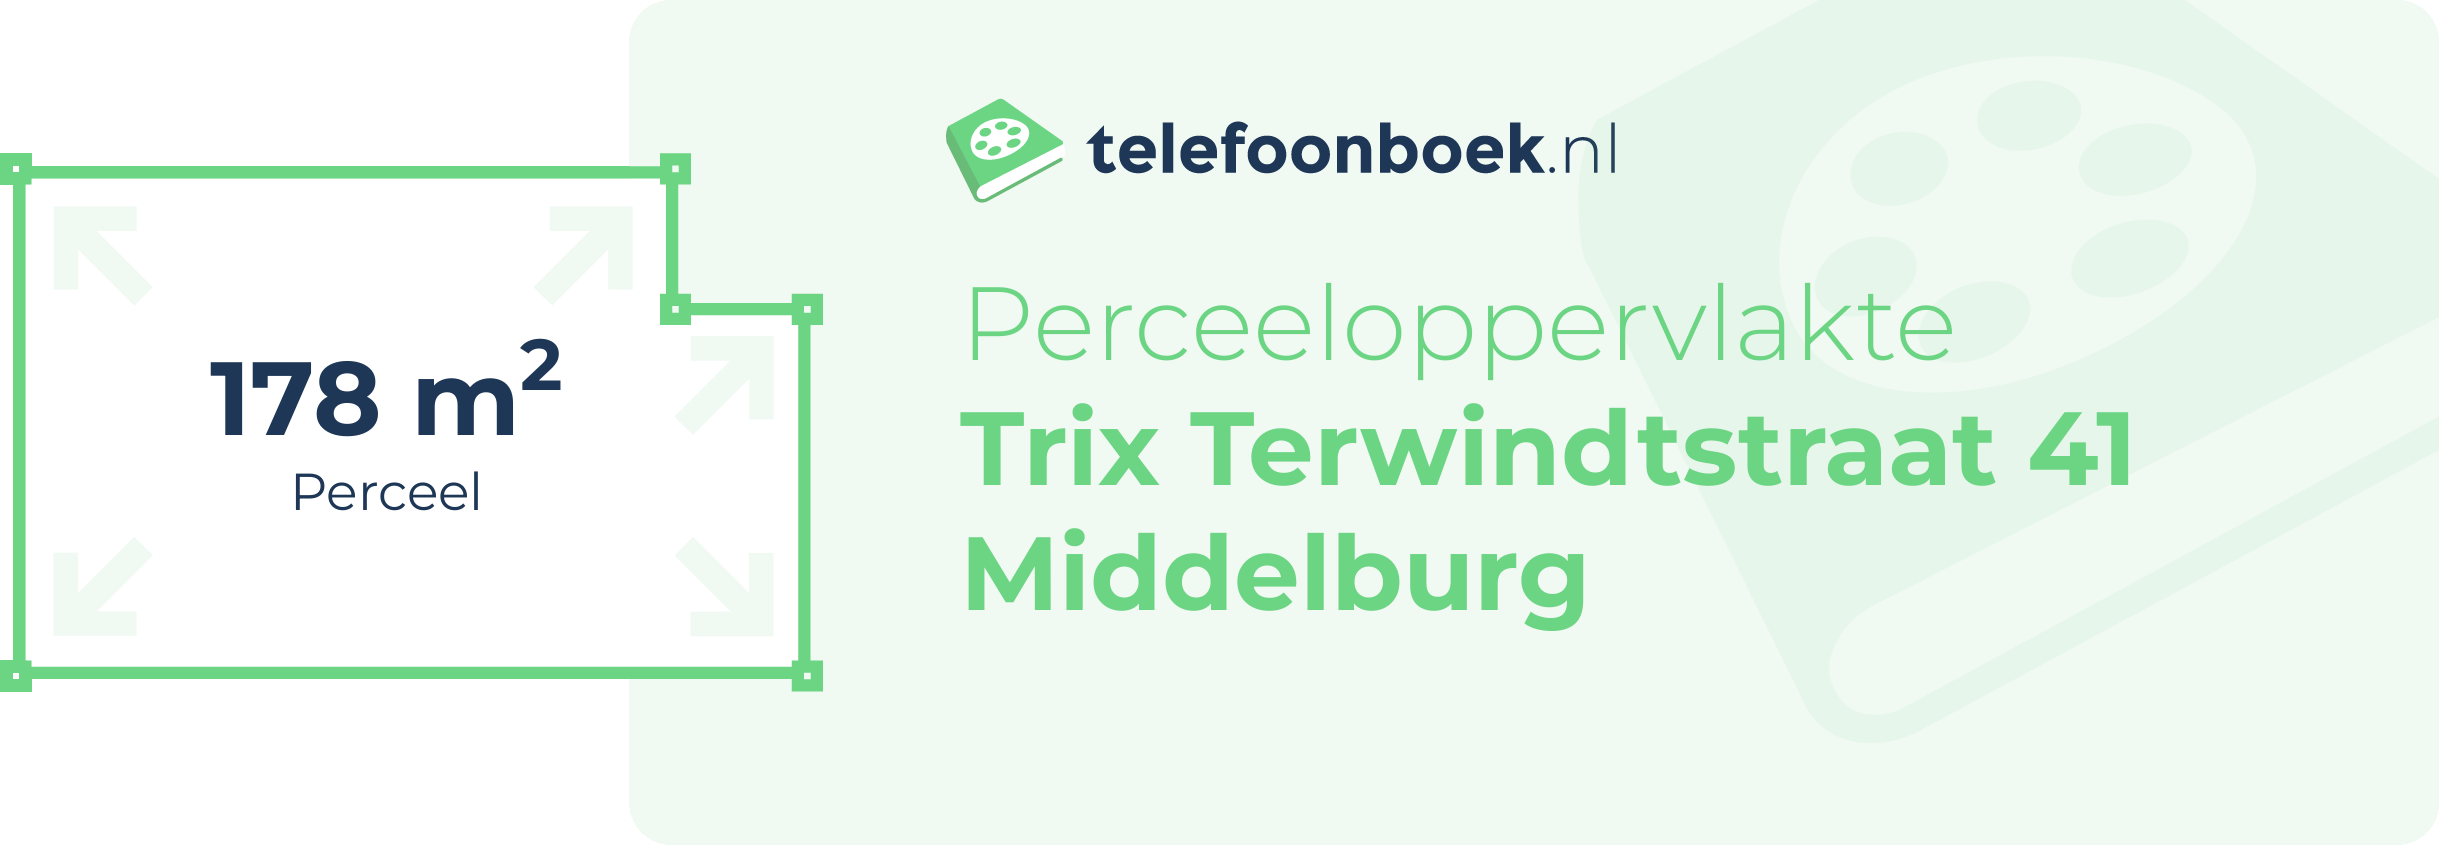 Perceeloppervlakte Trix Terwindtstraat 41 Middelburg